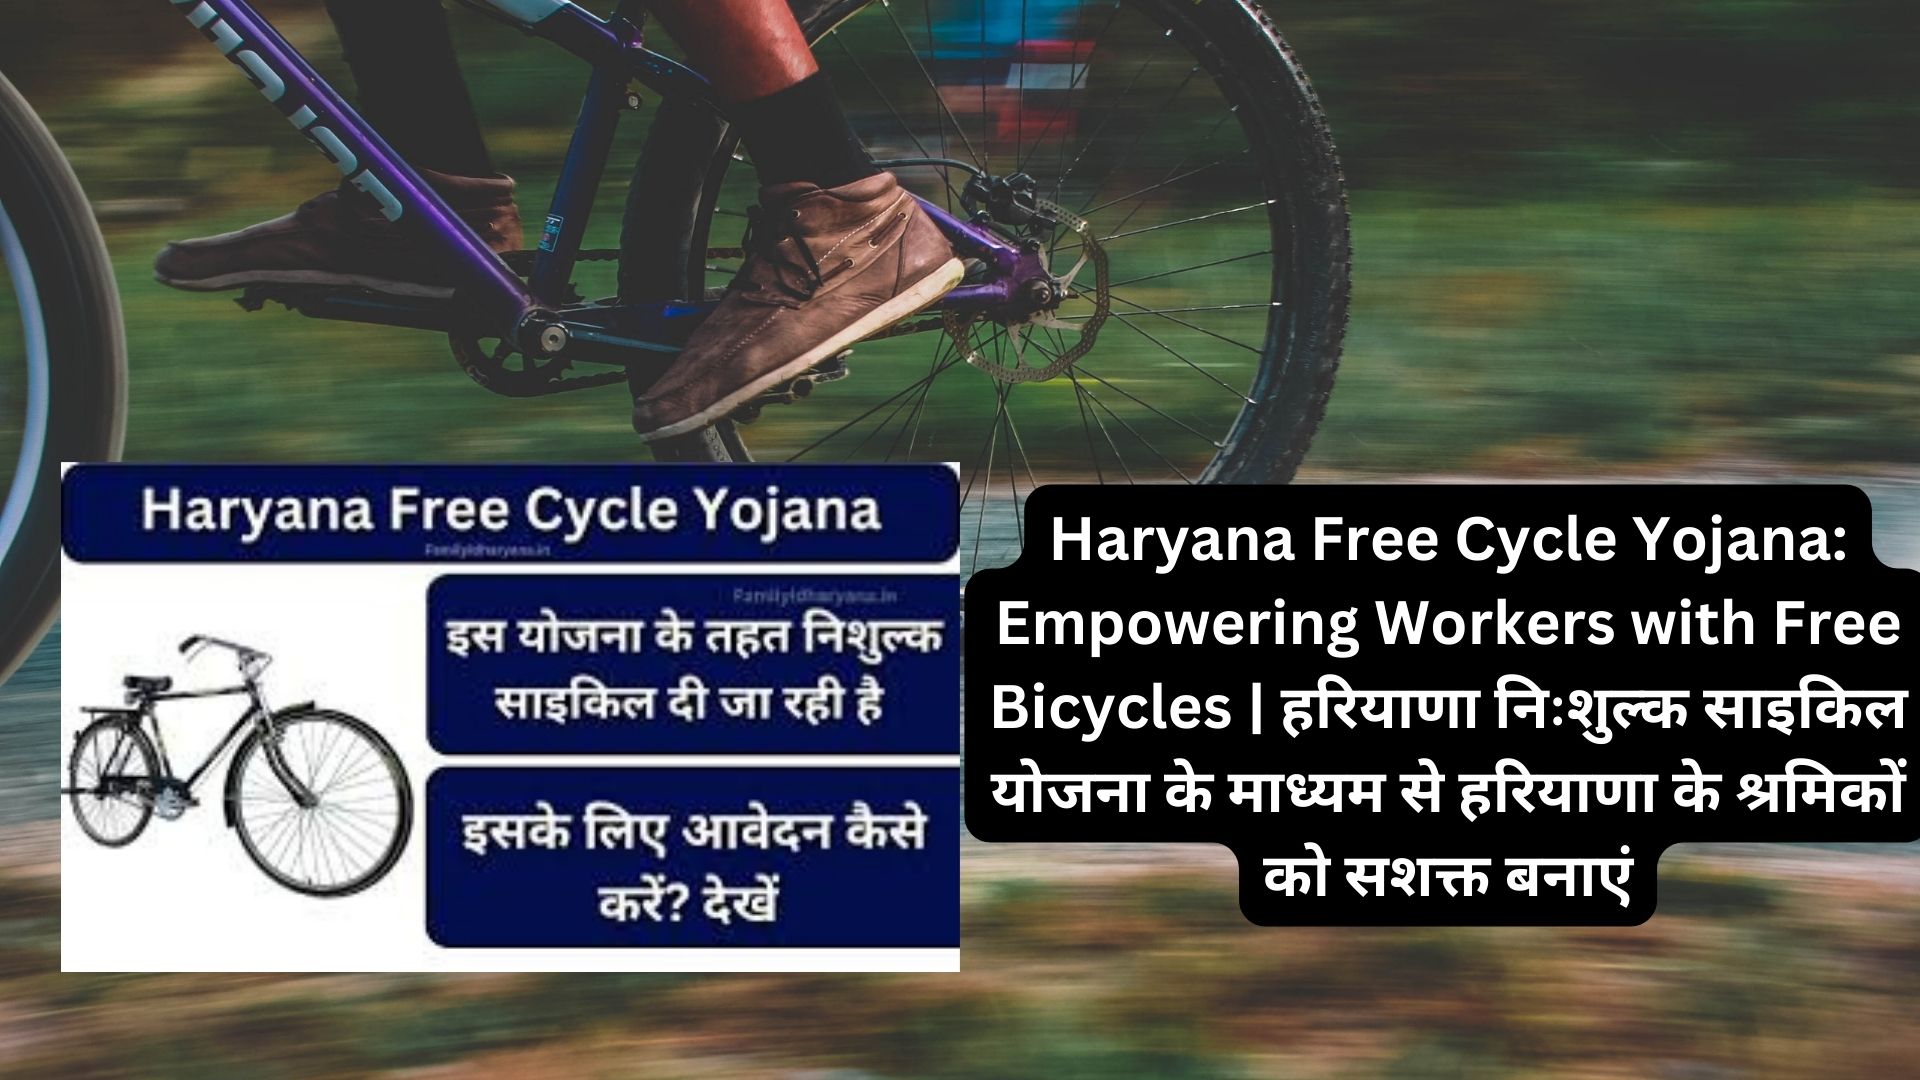 Haryana Free Cycle Yojana: Empowering Workers with Free Bicycles | हरियाणा निःशुल्क साइकिल योजना के माध्यम से हरियाणा के श्रमिकों को सशक्त बनाएं